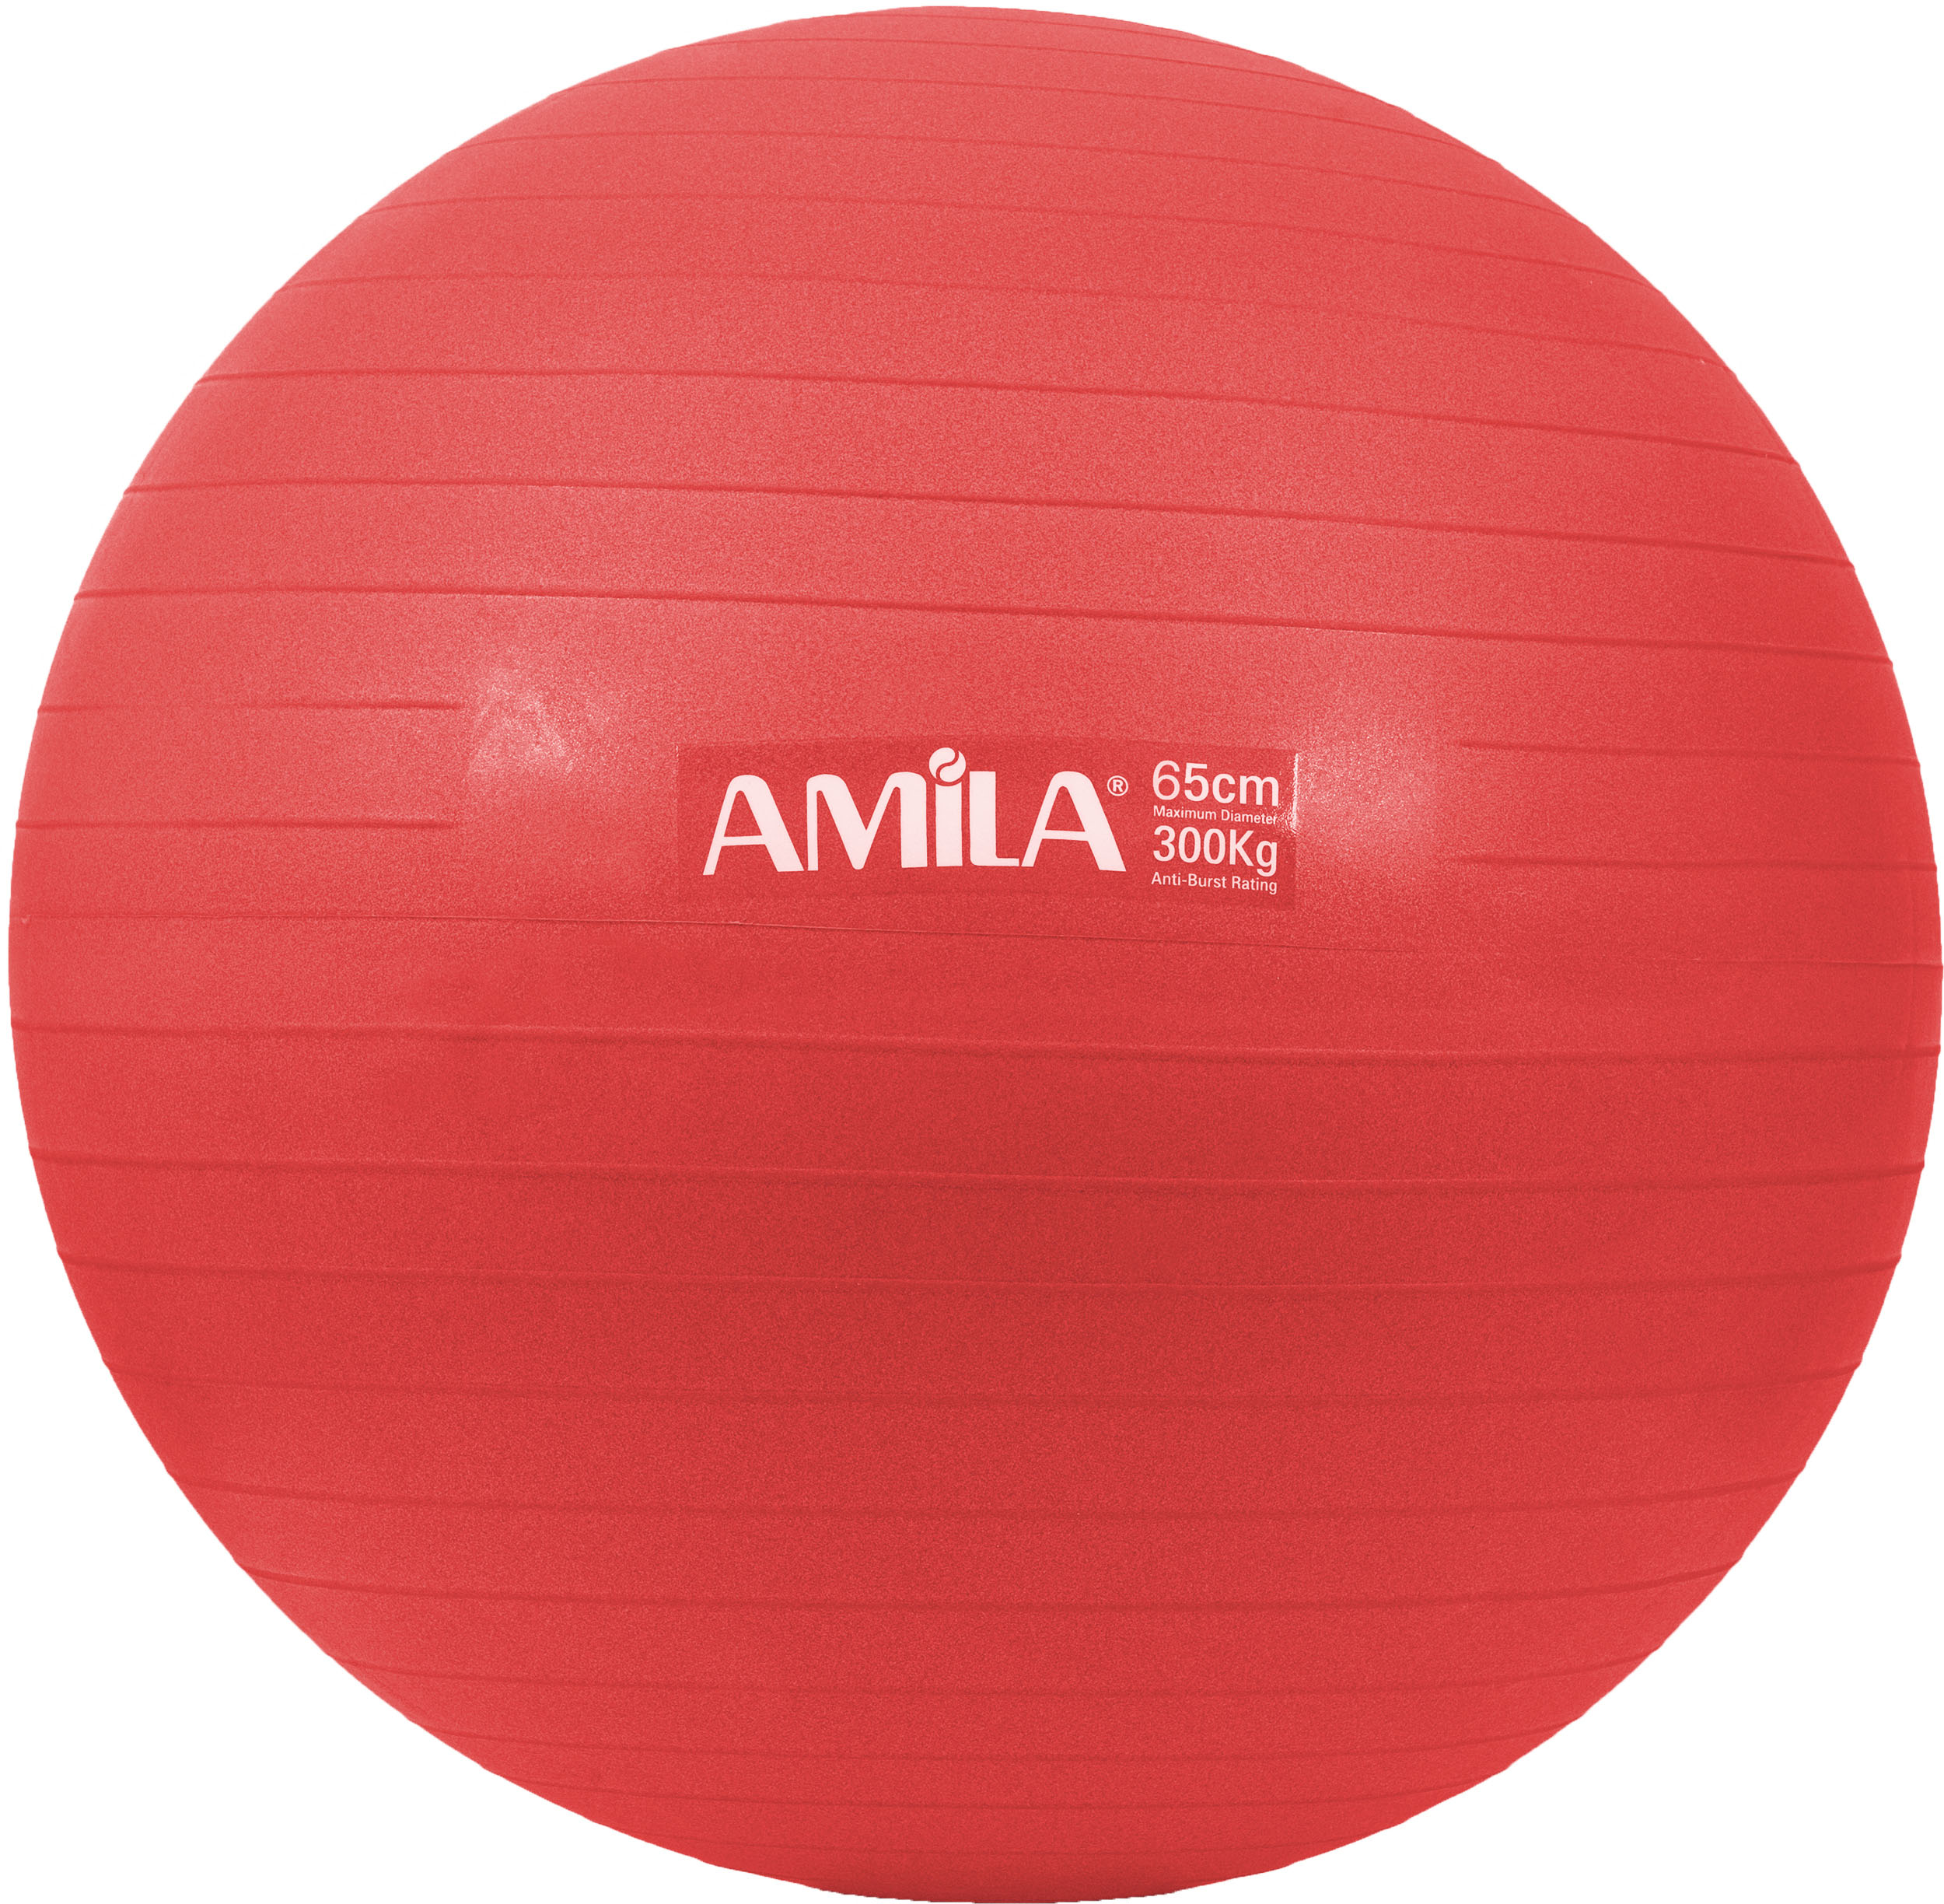 Amila Μπαλα Γυμναστικης 65Cm 1350Gr Bulk - Κοκκινη (48441)